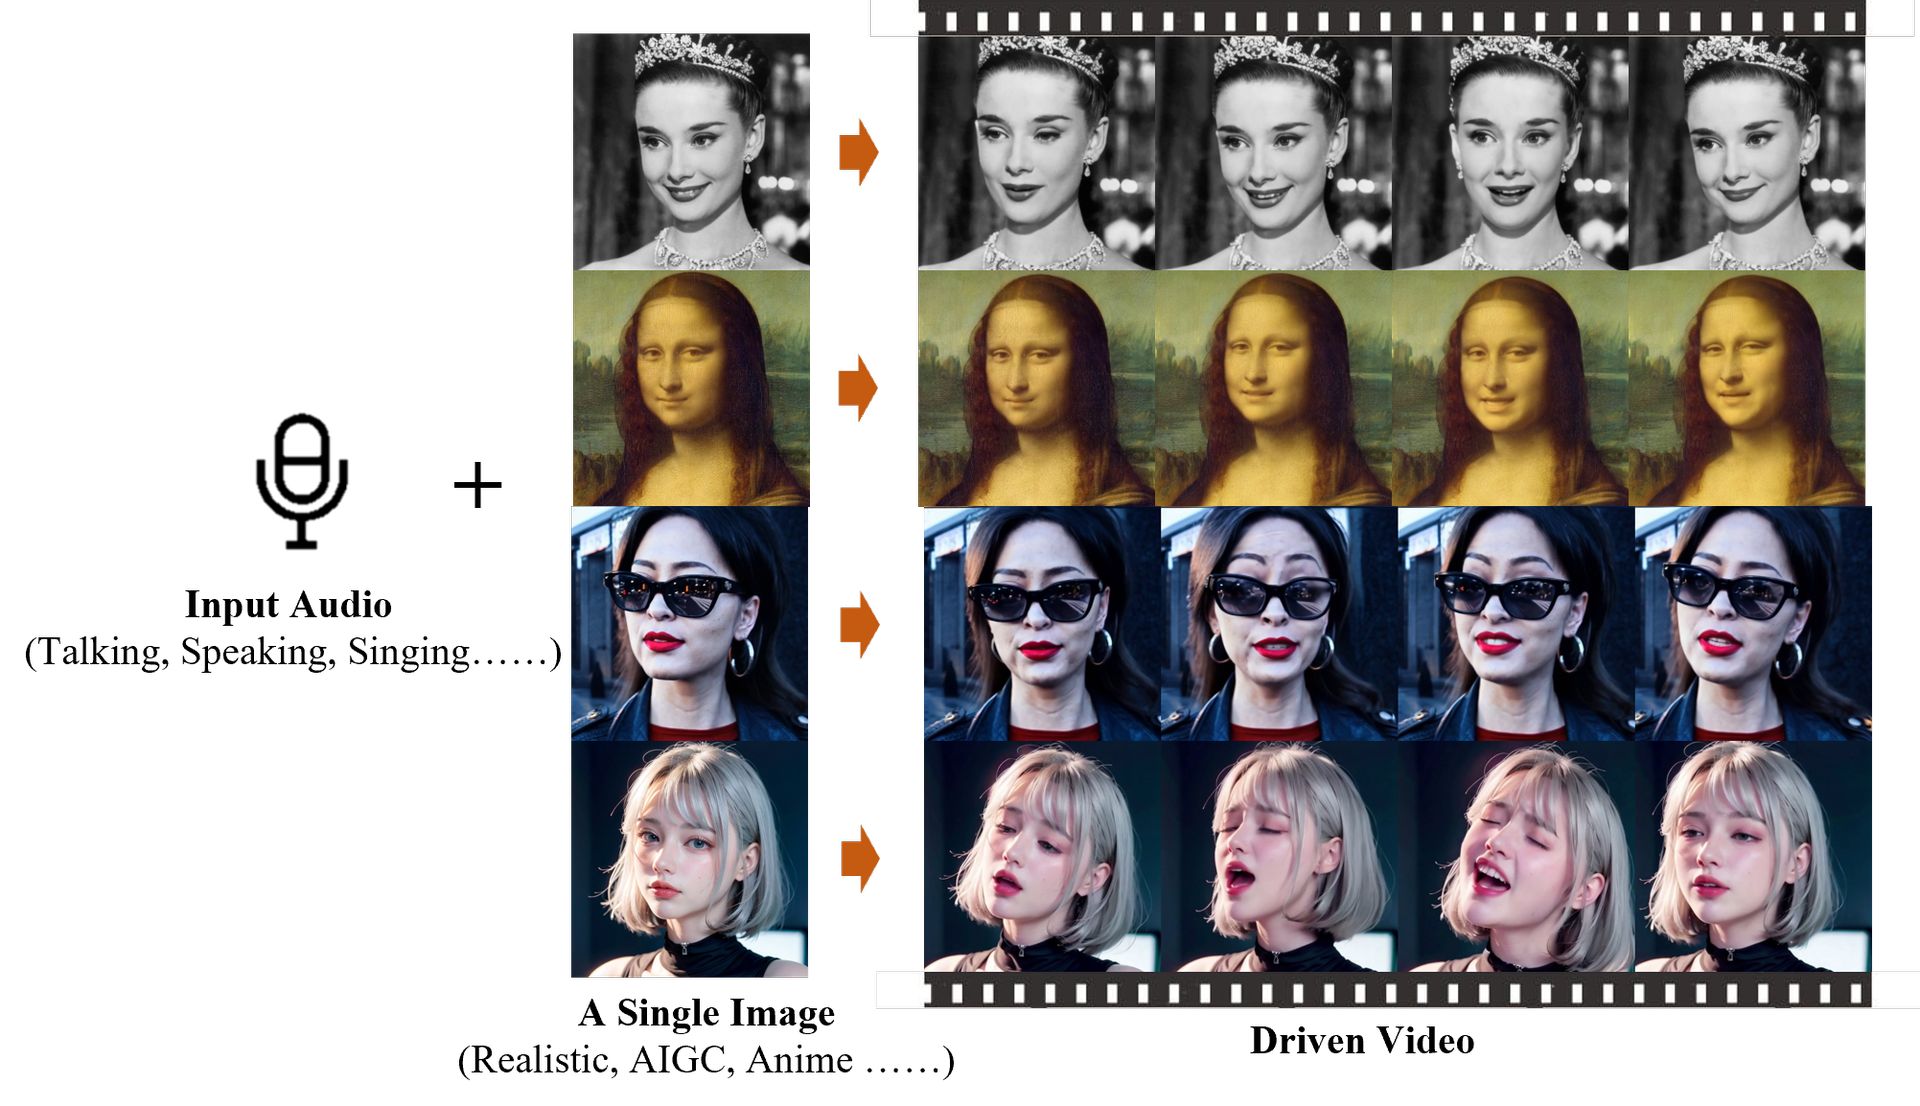 ¡Conozca EMO, la investigación de inteligencia artificial de Alibaba que revoluciona la animación de retratos! Desde fotografías hasta discursos o canciones, Emote Portrait Alive puede manejarlo todo.